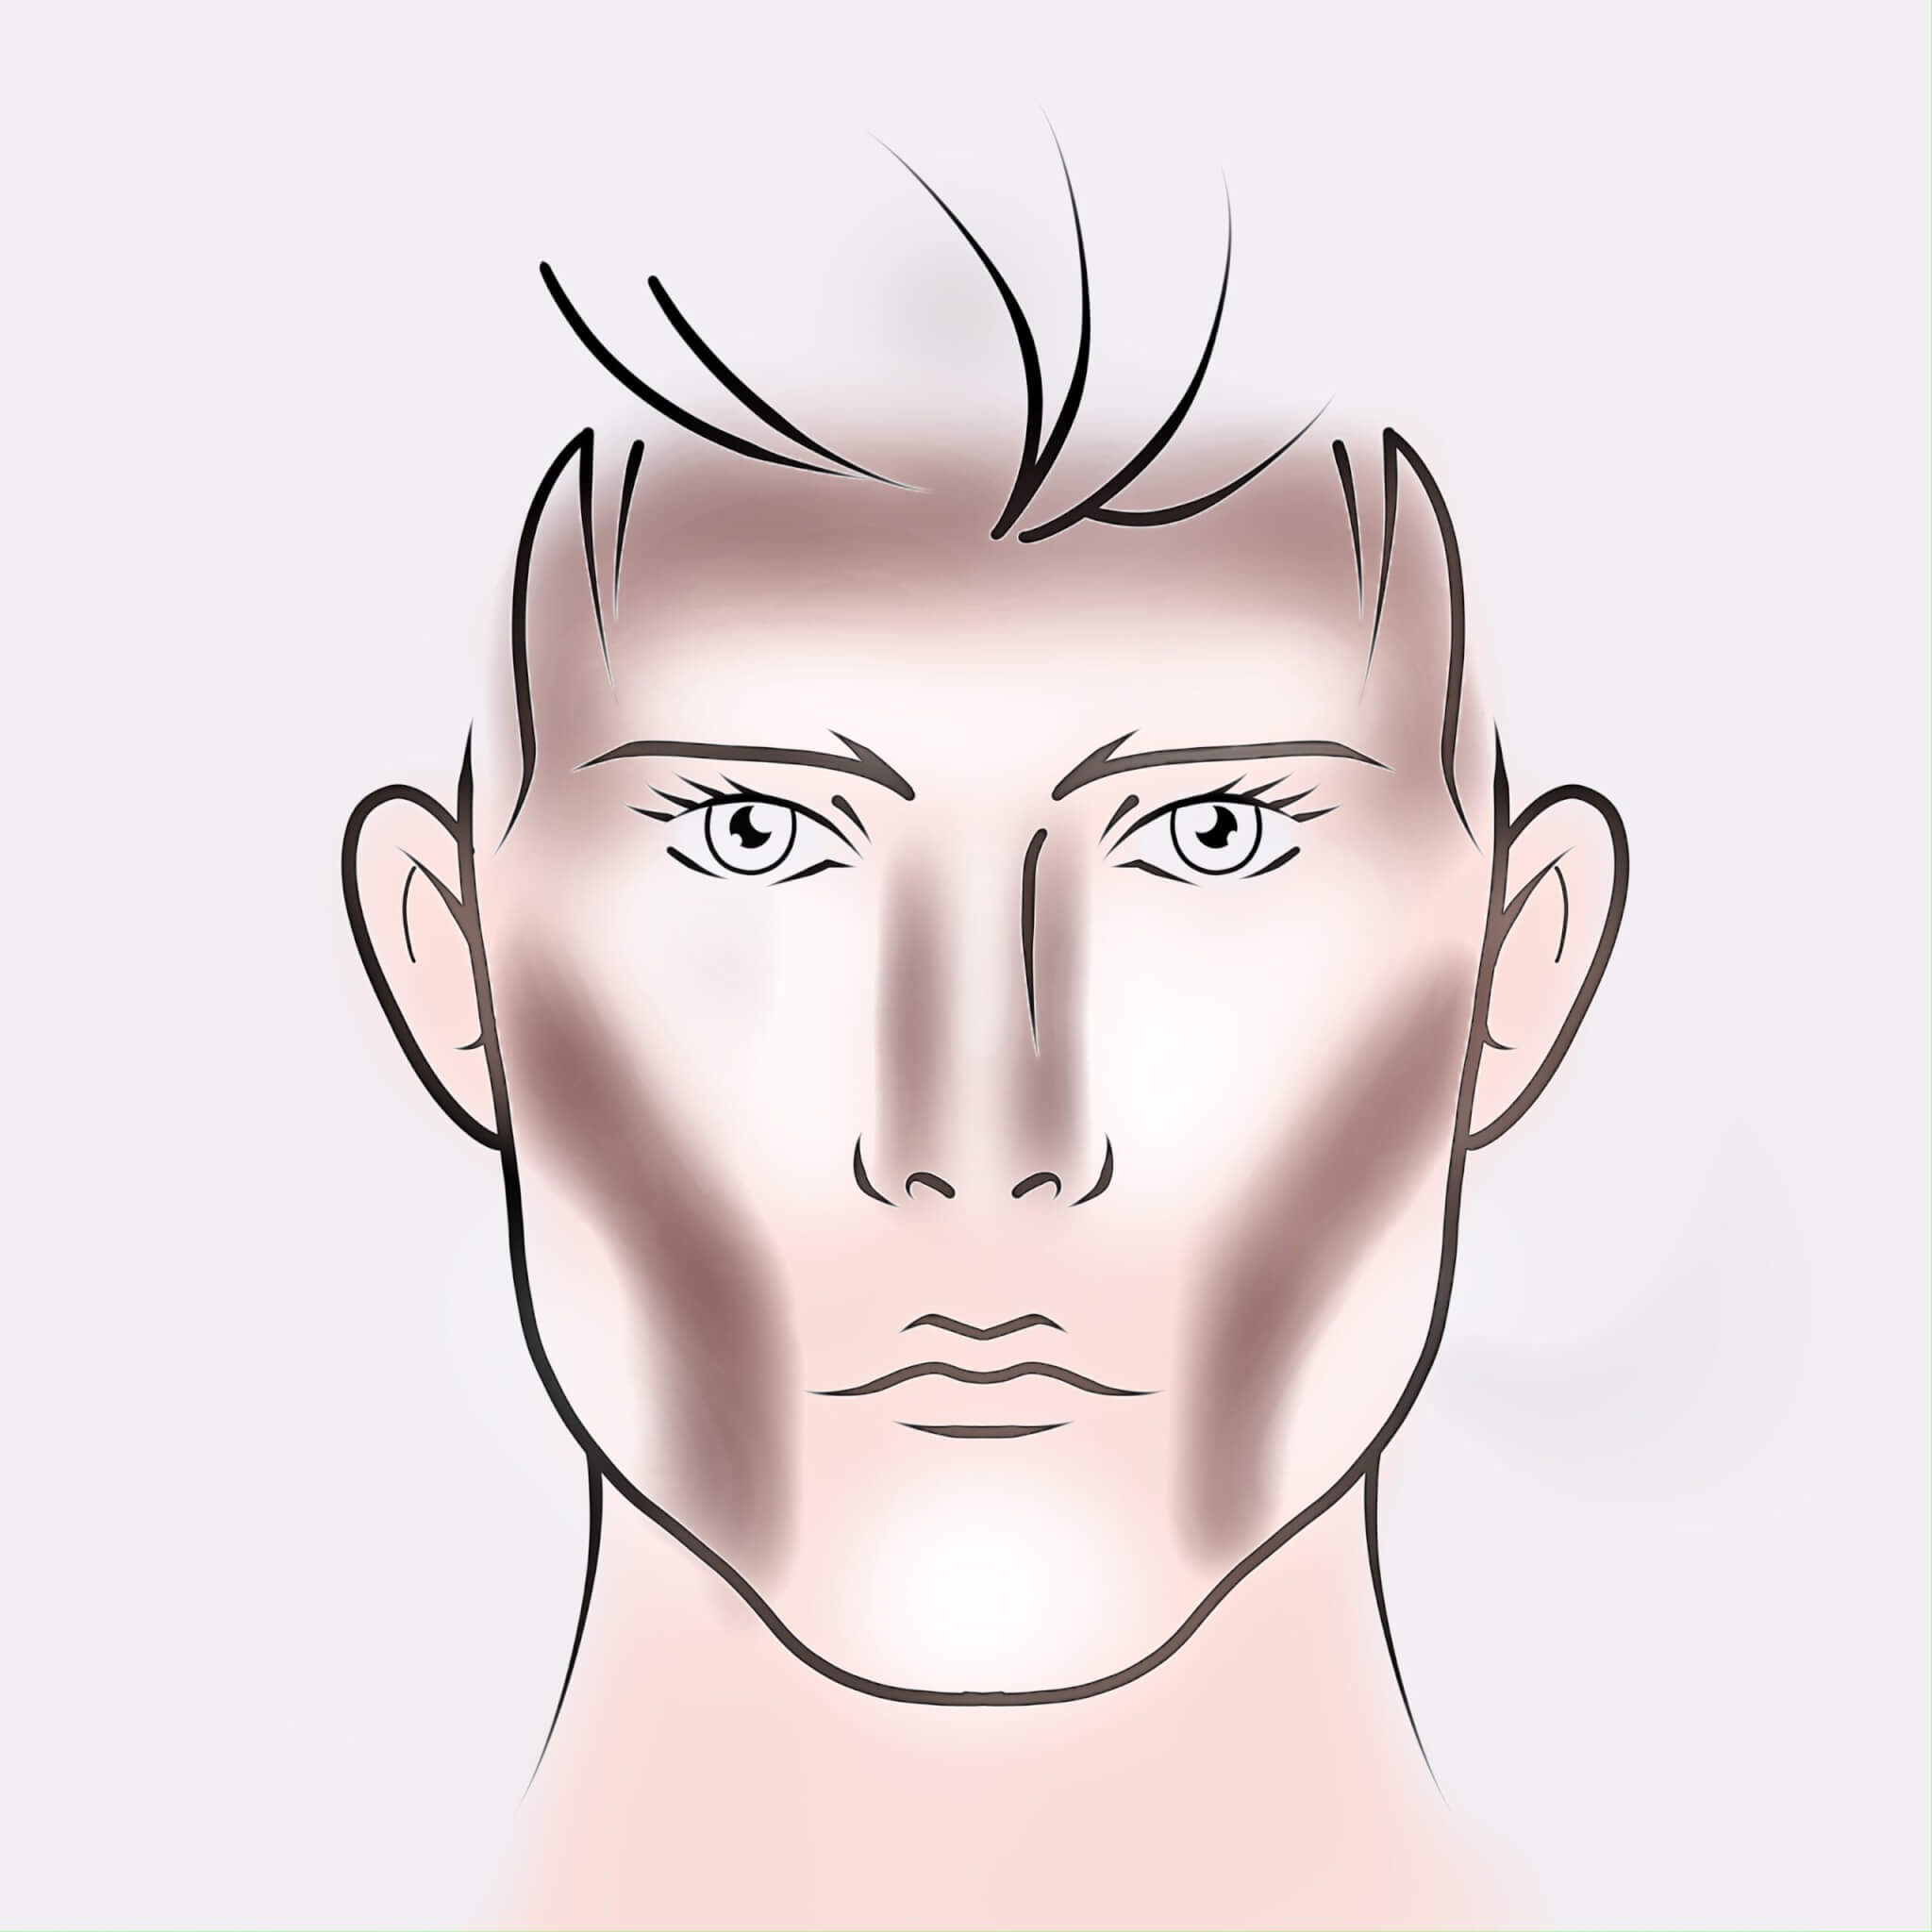 Contouring: come rendere il volto più maschile con questa tecnica di makeup - IMG 1863 Facetune 09 06 2021 12 16 01 scaled - Gay.it